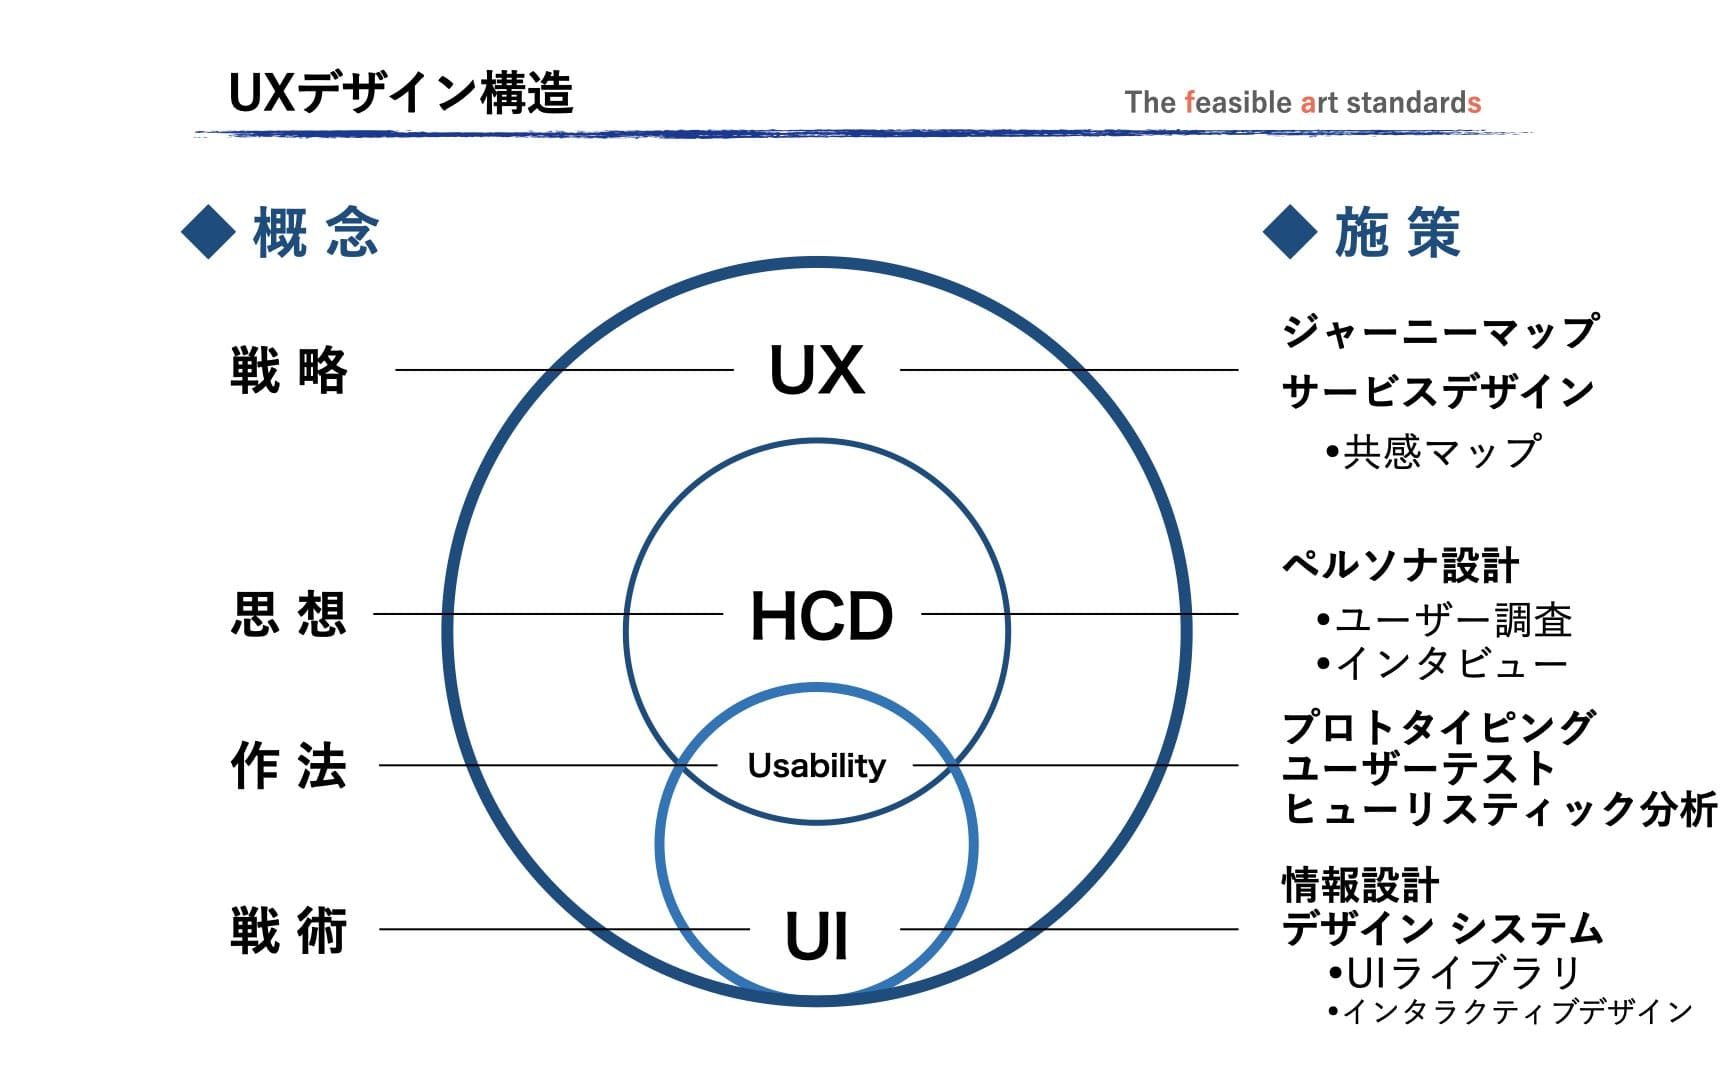 UXは人間中心設計の思想を軸に、そこからユーザービリティを評価軸としてユーザーの目的達成を支える具体的な設計をUIが担う相関図。